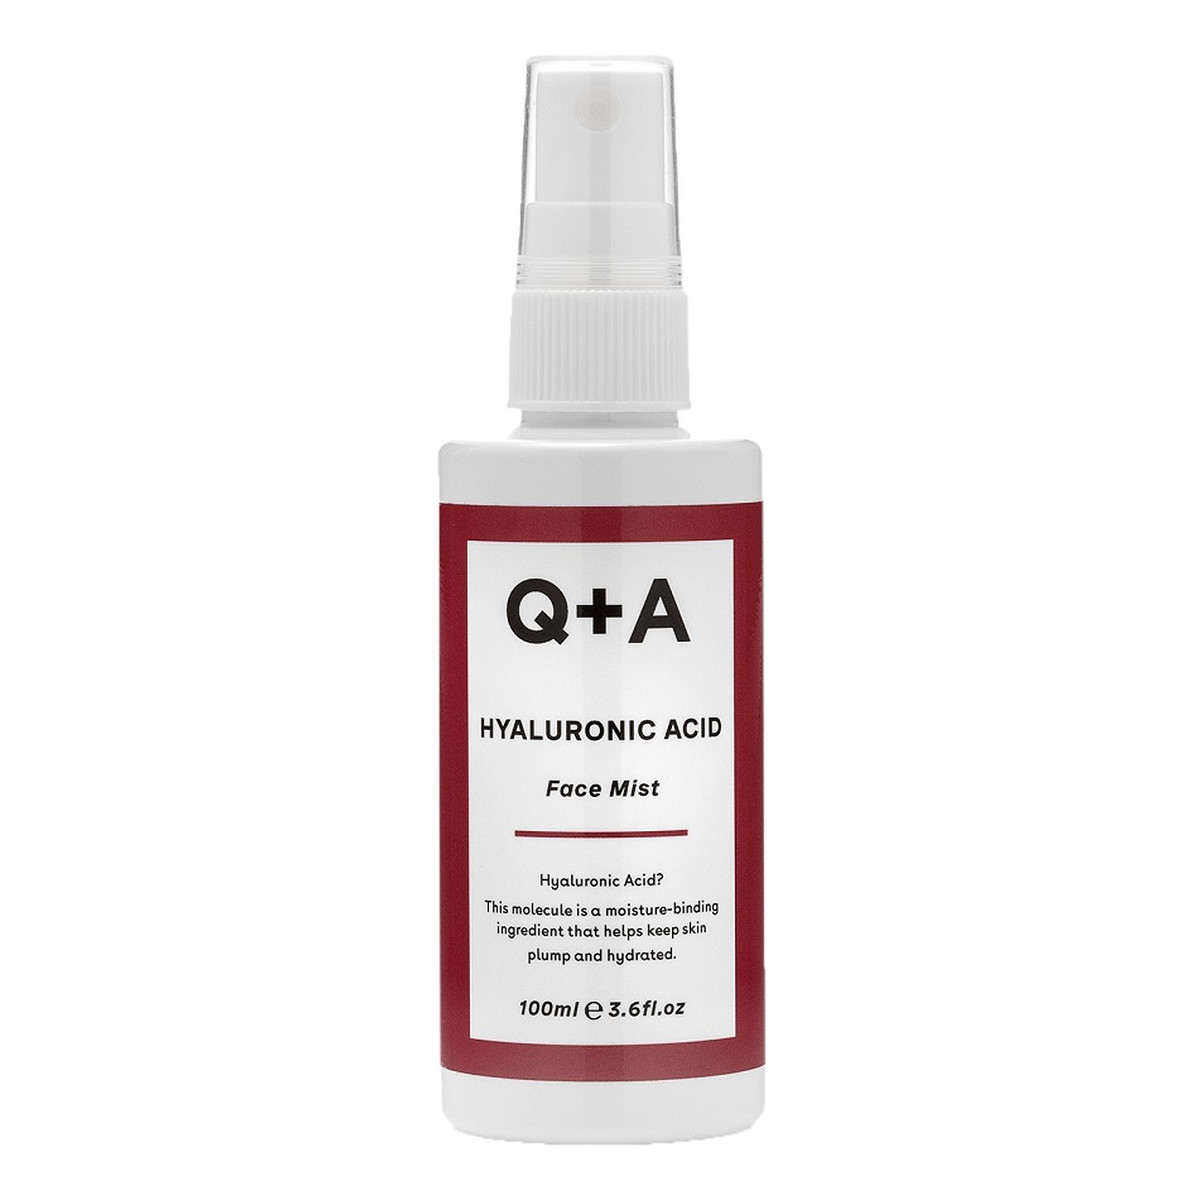 Q+A Hyaluronic Acid Face Mist nawilżająca Mgiełka z kwasem hialuronowym 100ml